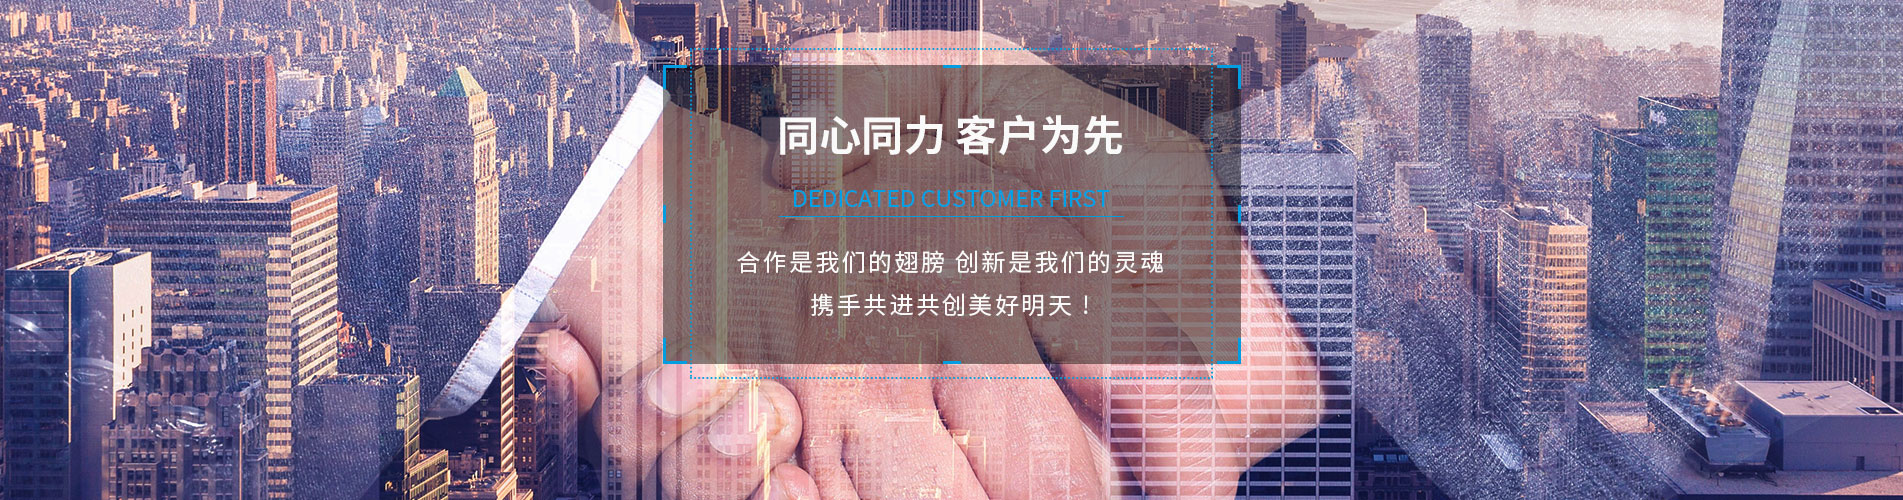  上海璞奧電子科技有限公司